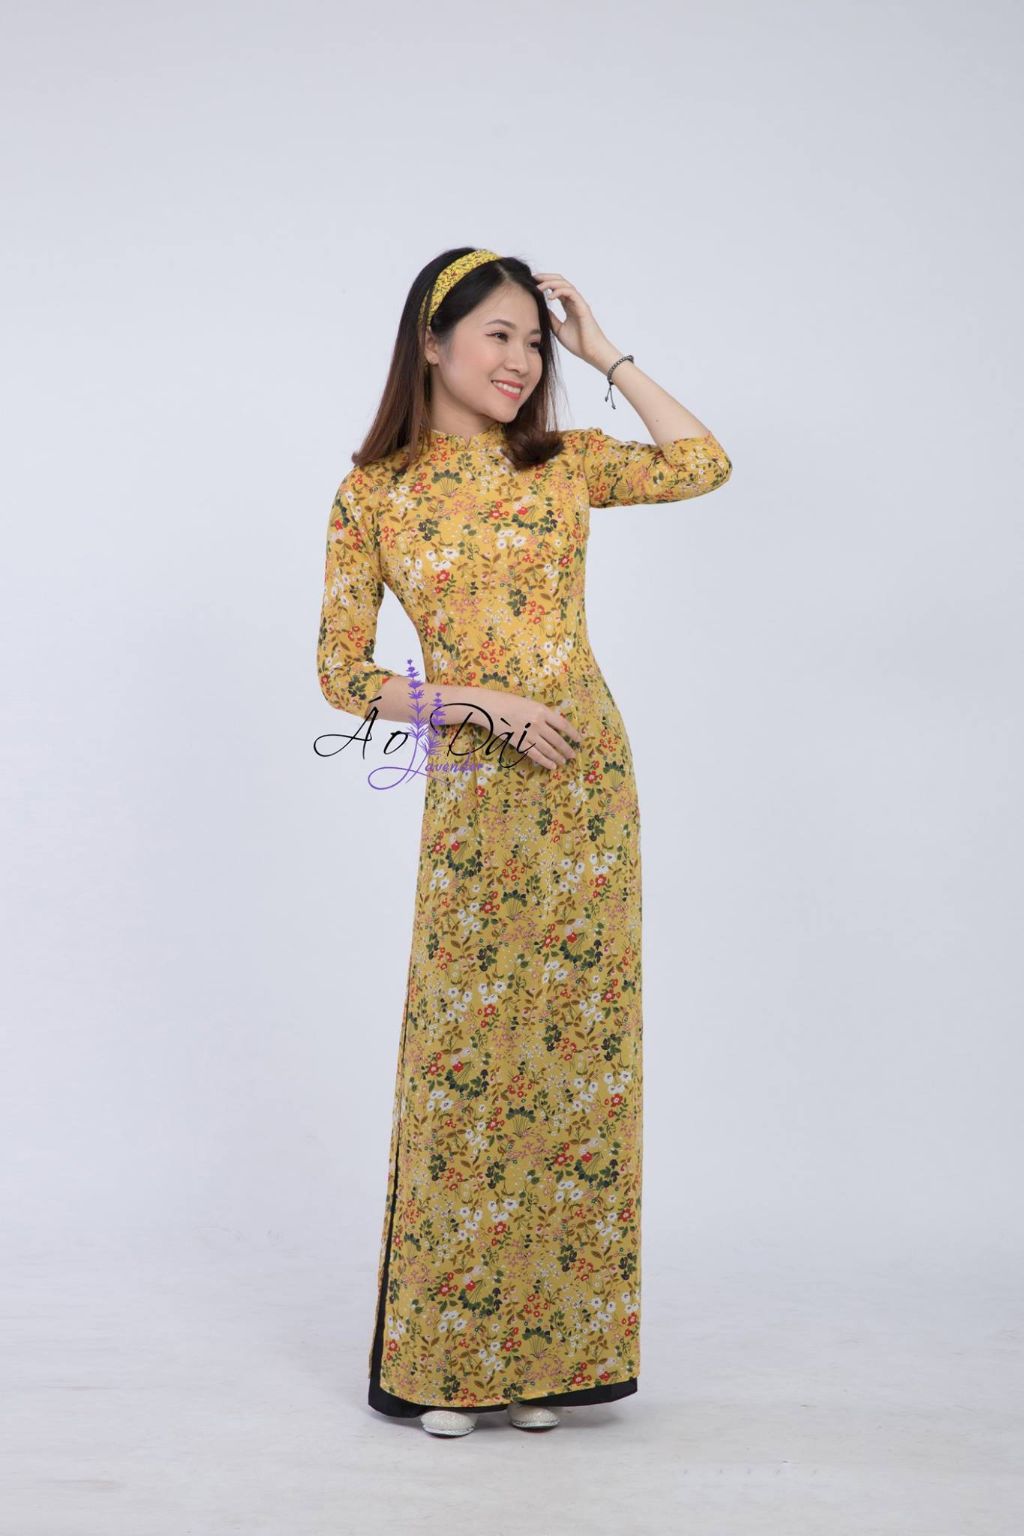 Cửa hàng cho thuê áo dài ở Hà Nội uy tín lâu năm - Lavender Studio 